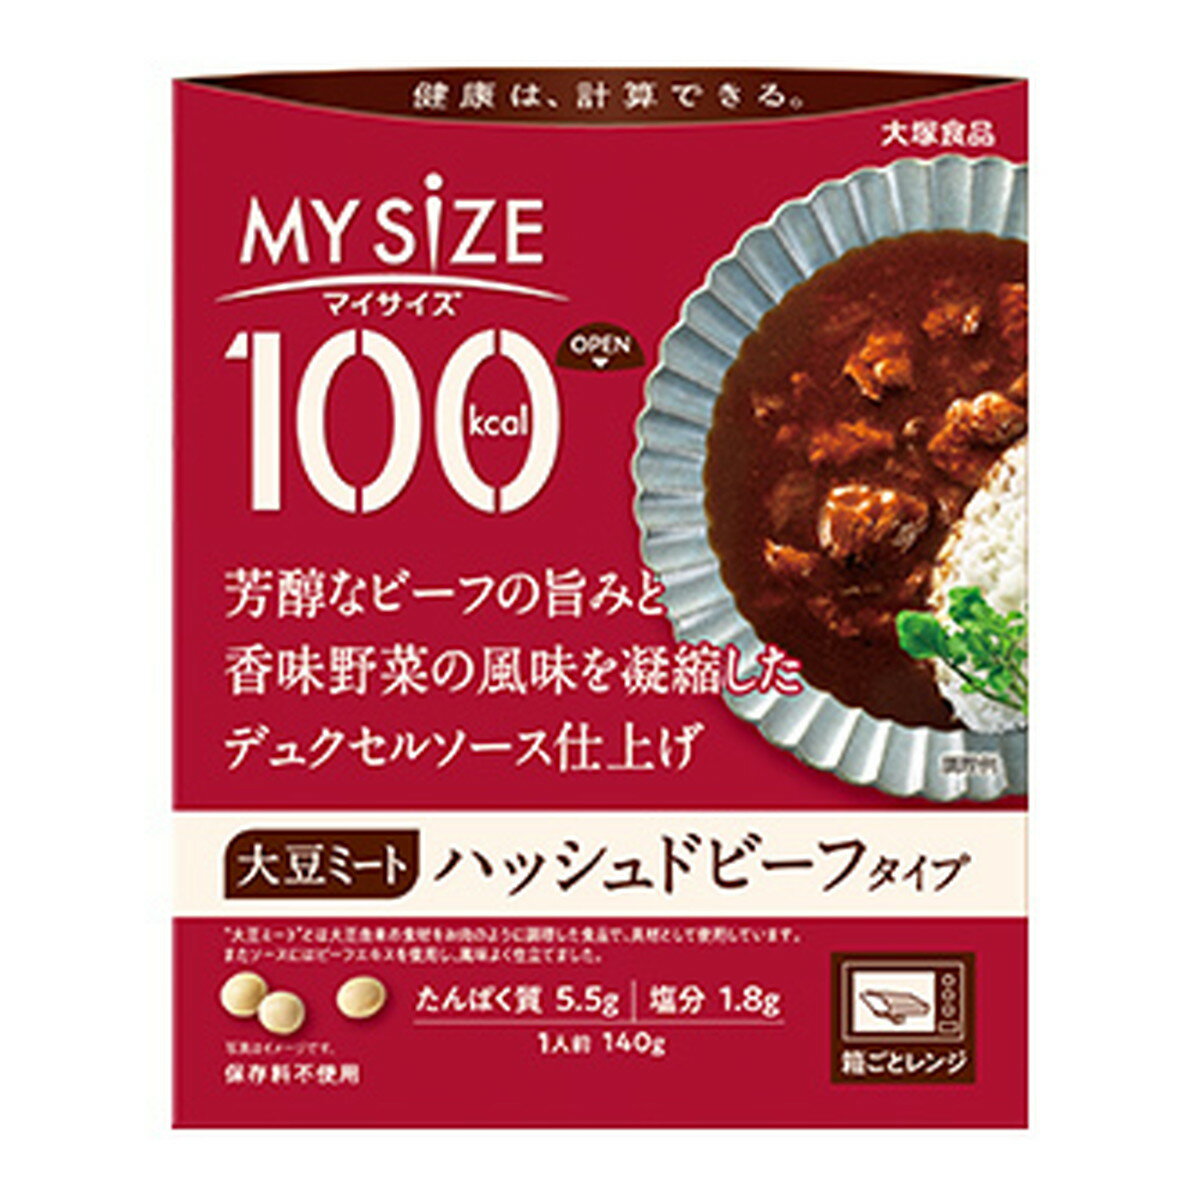 大塚食品 マイサイズ 大豆ミート ハッシュドビーフタイプ 140g